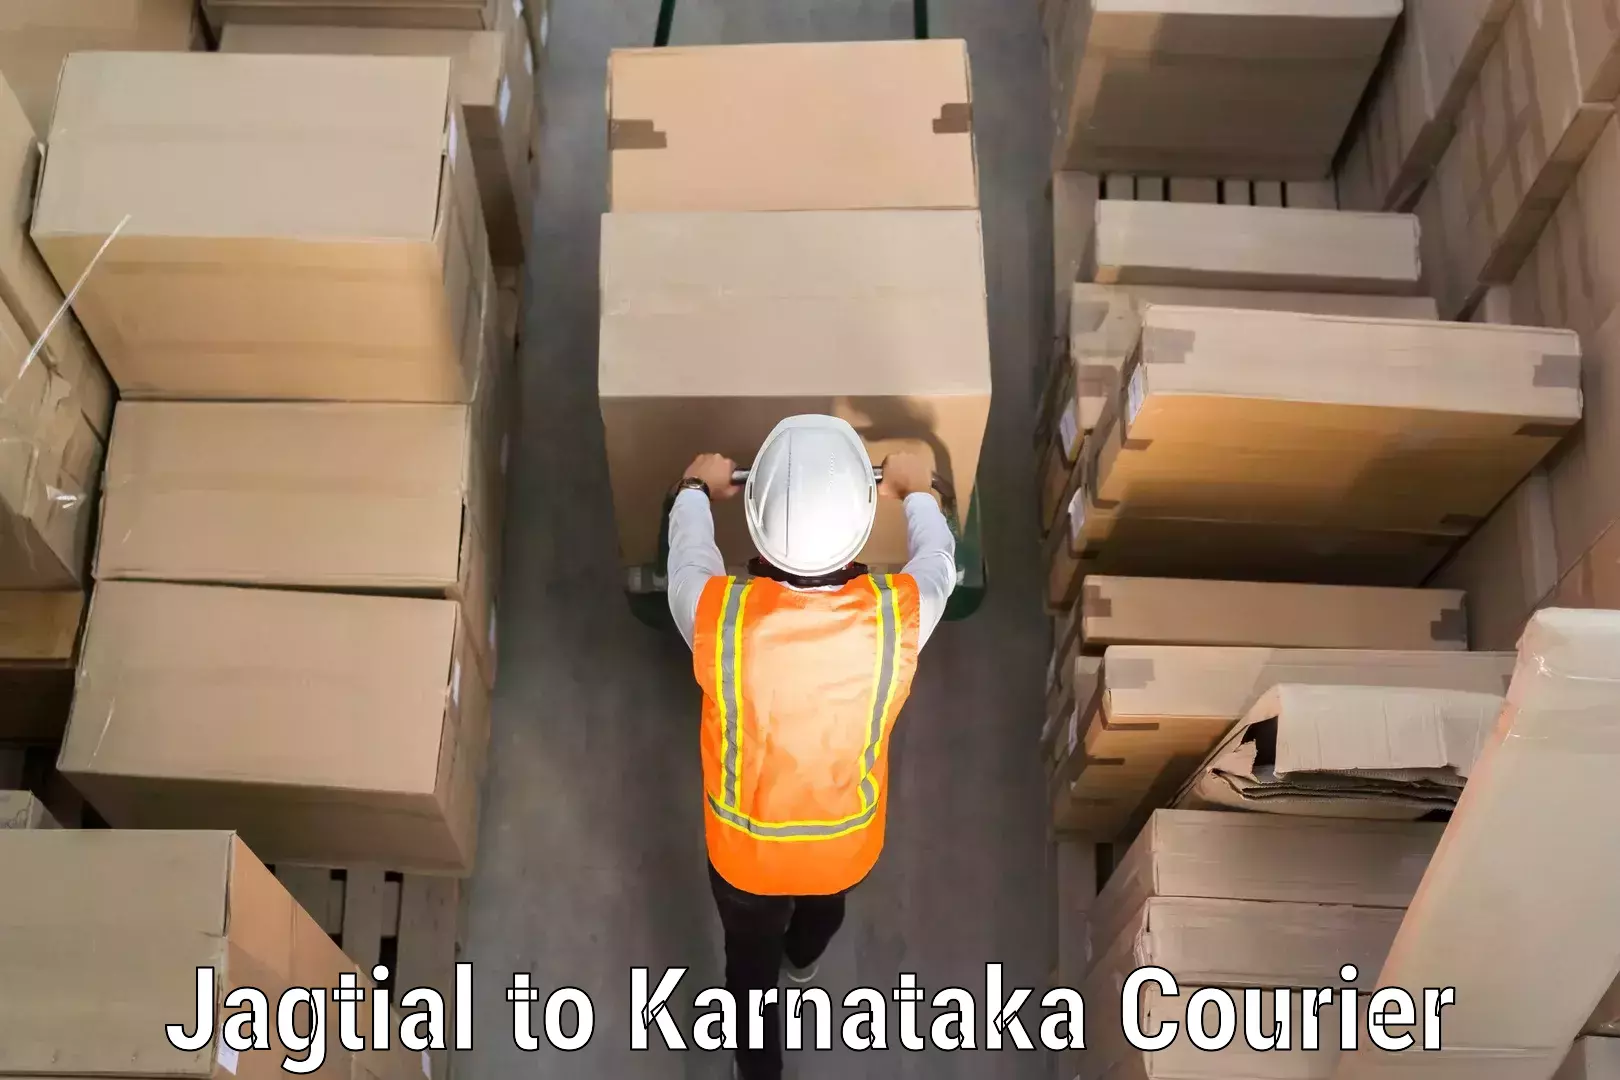 Luggage transport consultancy Jagtial to Karnataka